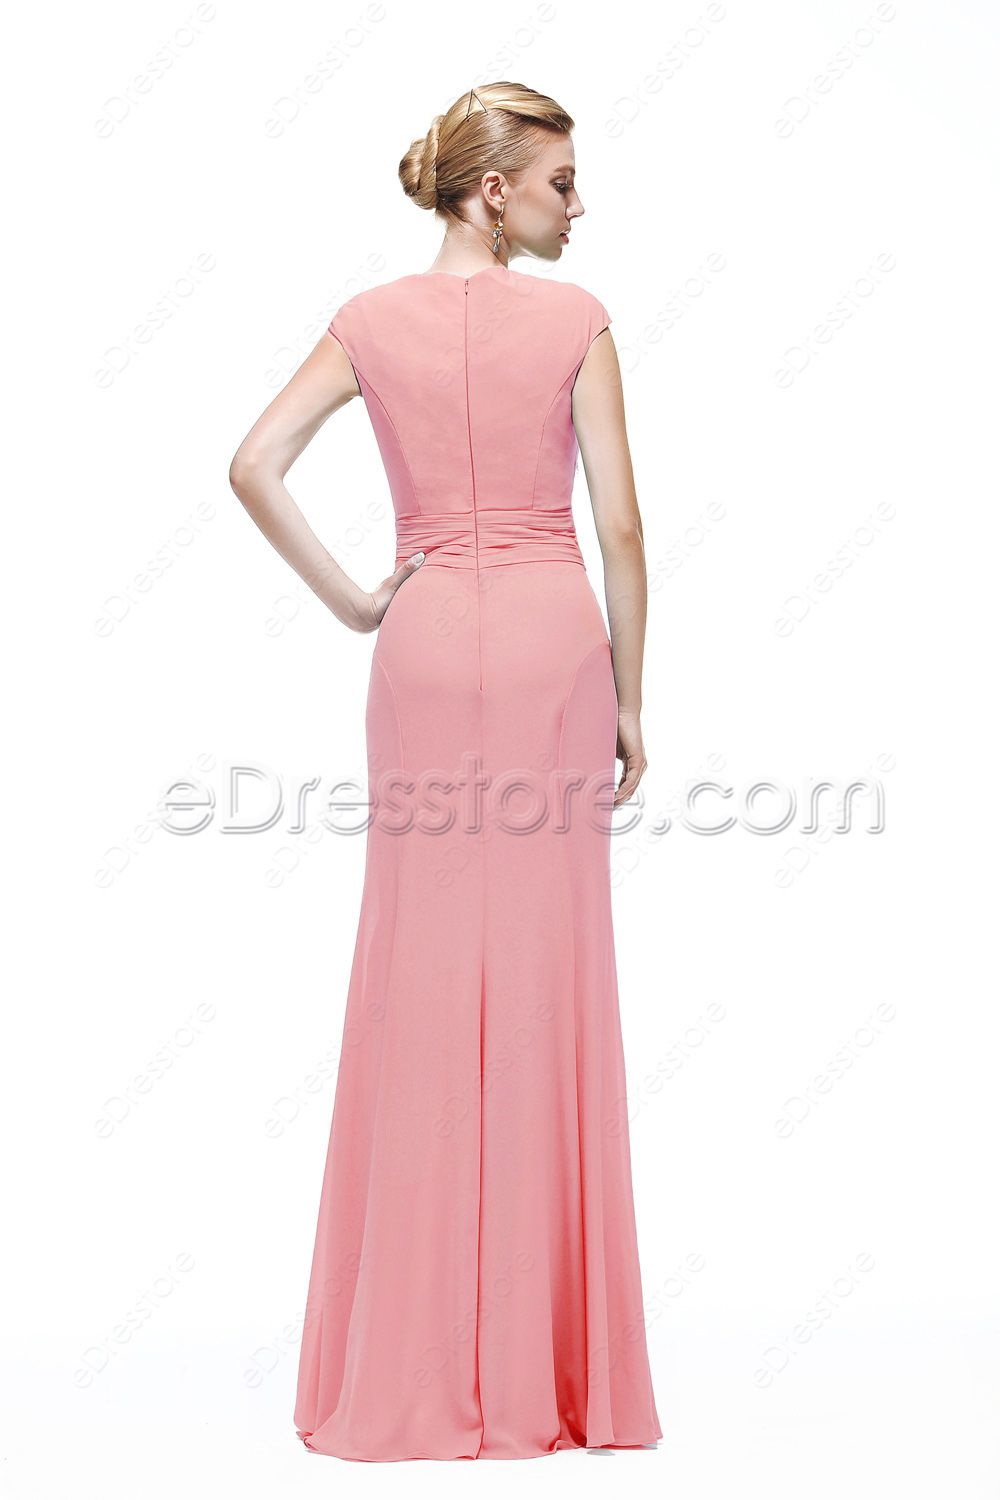 Mermaid Crystals Modest Pink Prom Dress Cap Sleeves | eDresstore